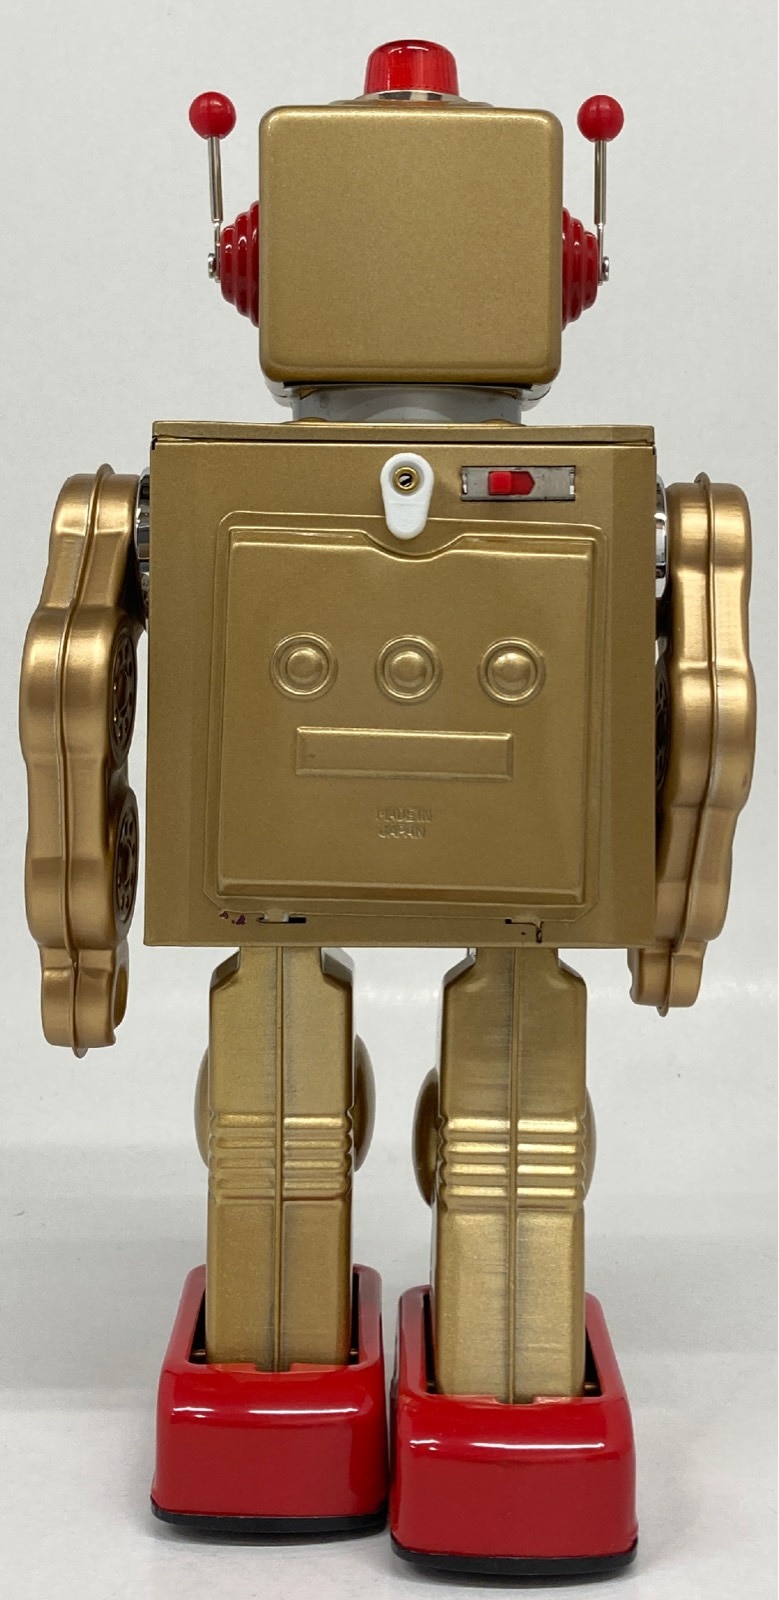 新品本物 GEAR ROBOT メタルハウス ギアロボット abubakarbukolasaraki.com